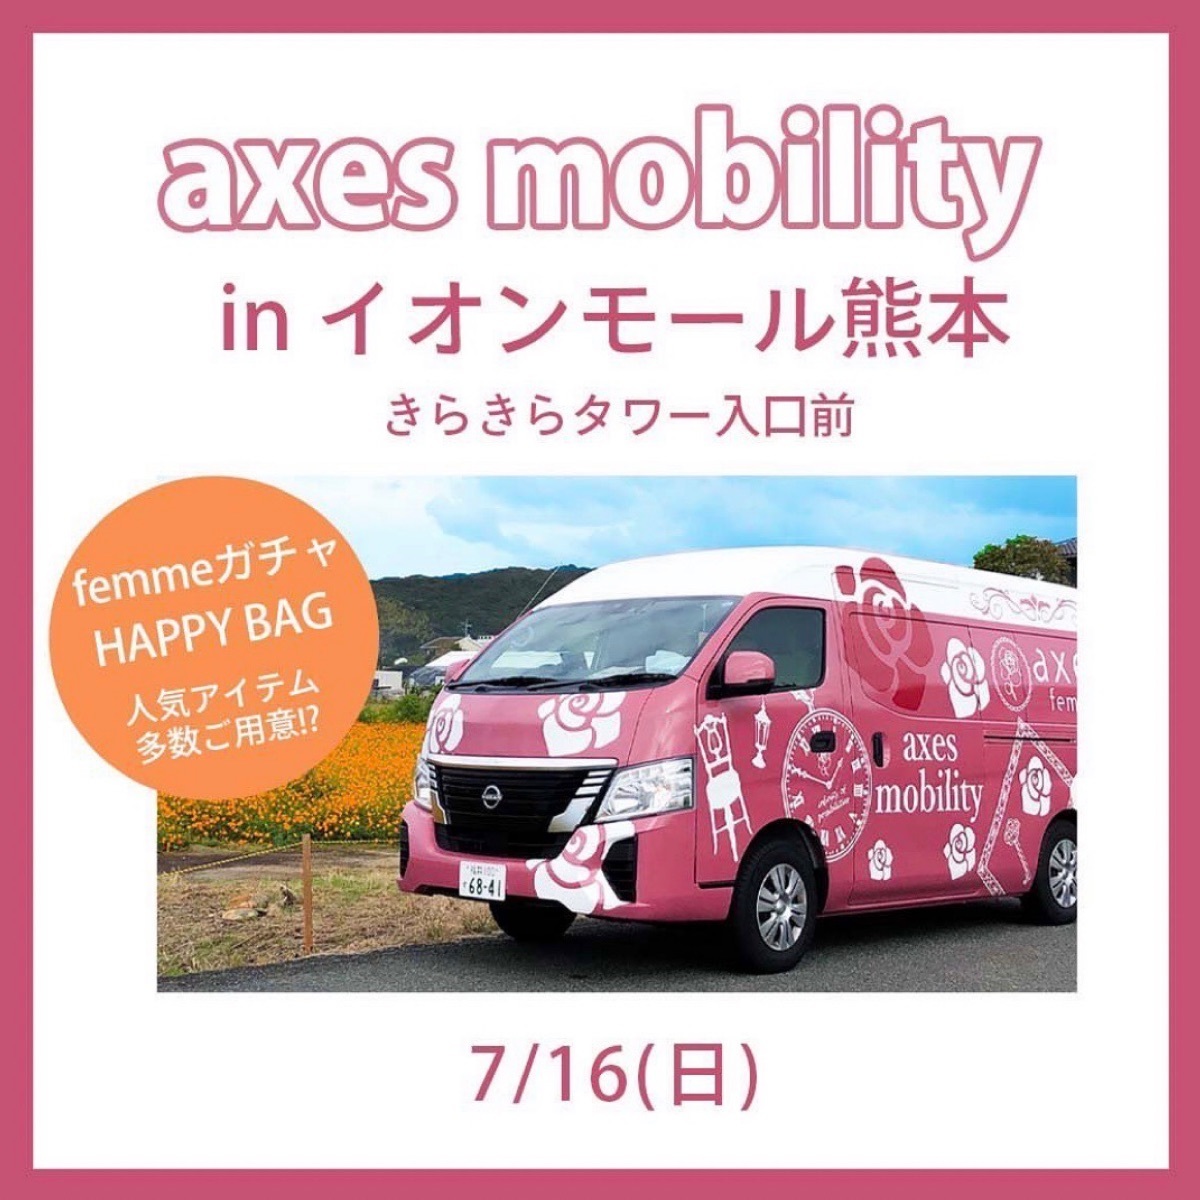 axes mobilityが熊本にやってきます！